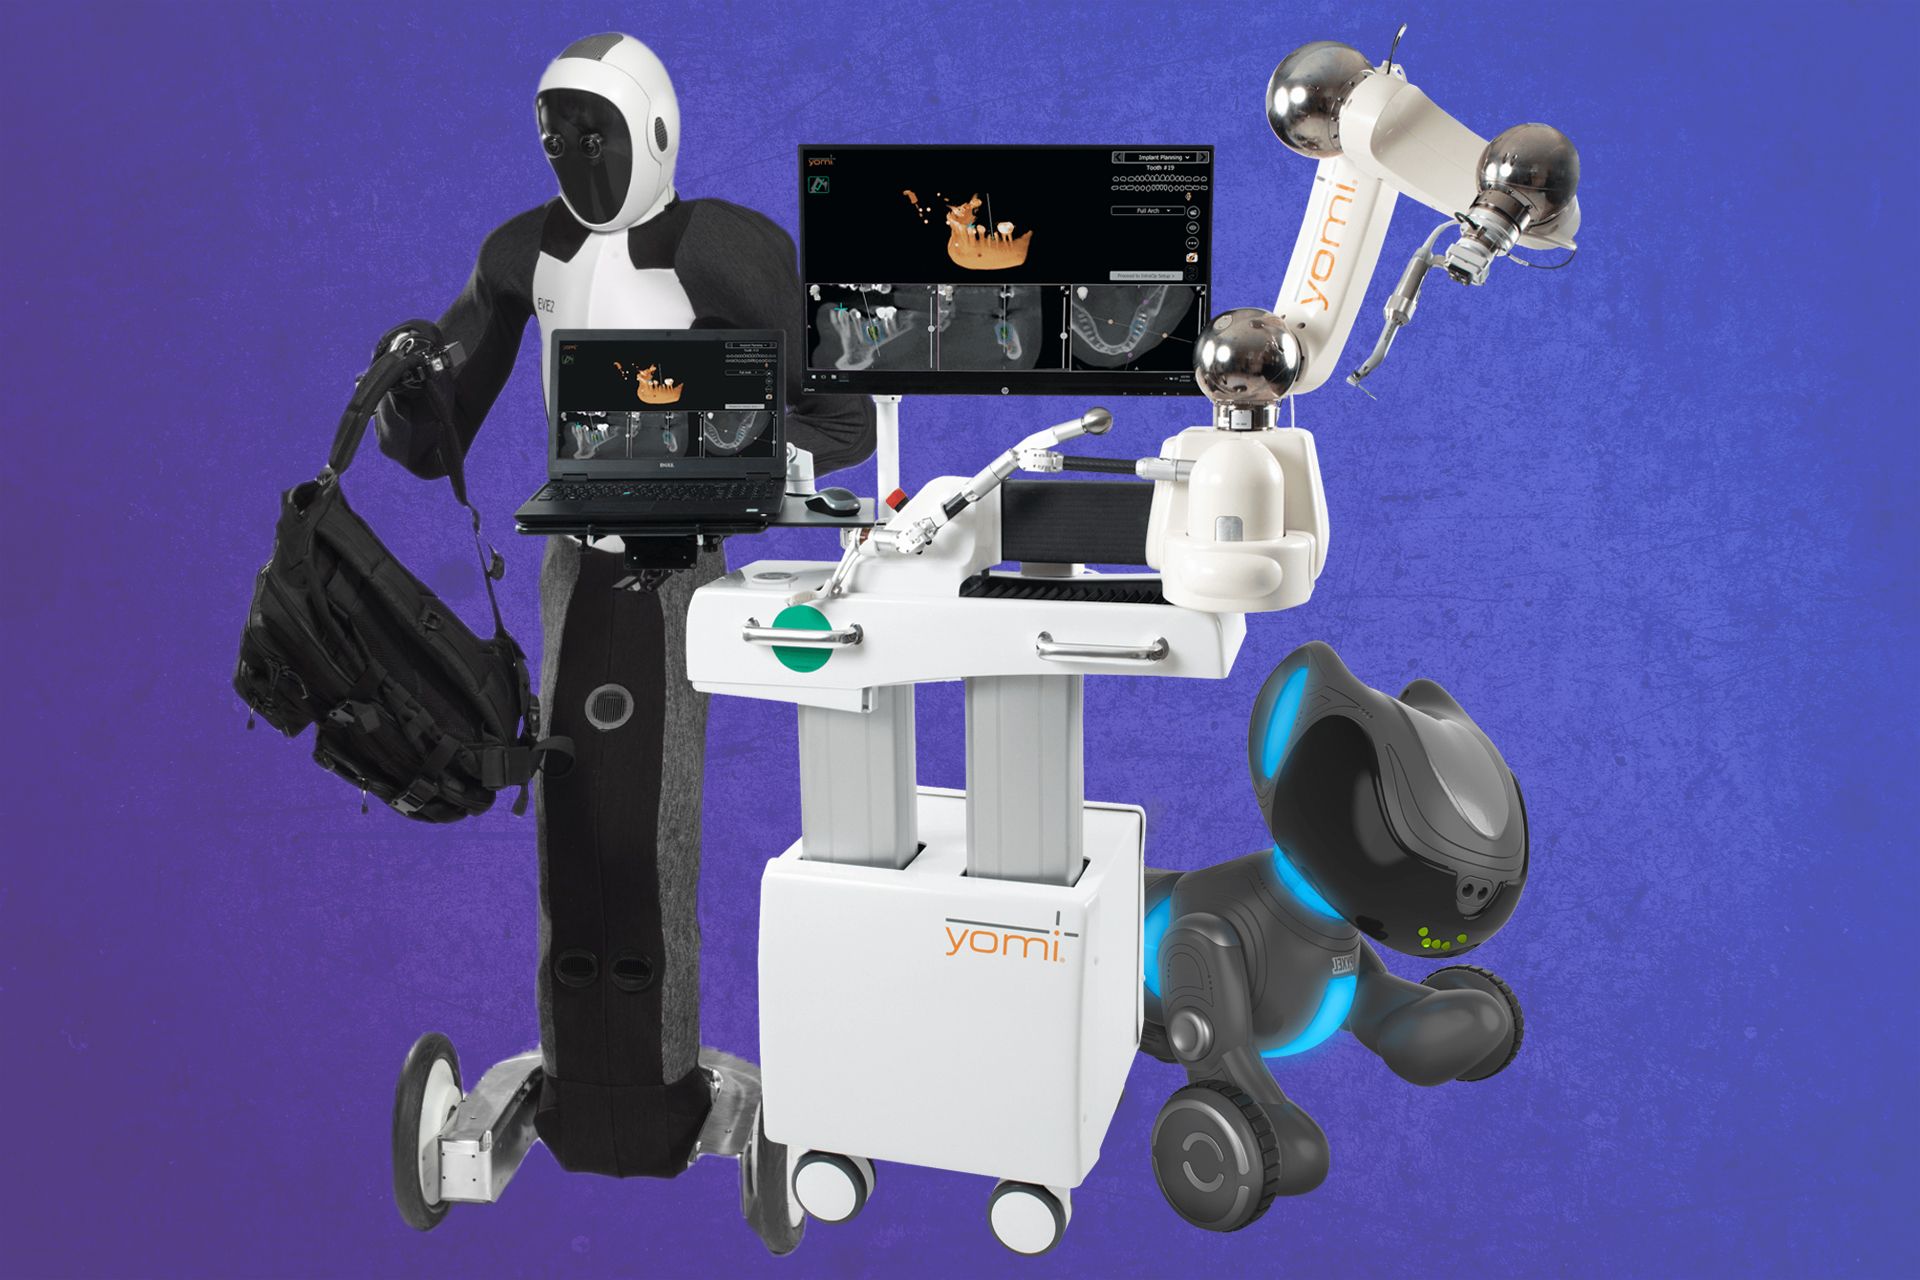 سه ربات مختلف (انسان نما، دندان پزشک و سگ نما) در کنار یکدیگر قرار گرفته اند 